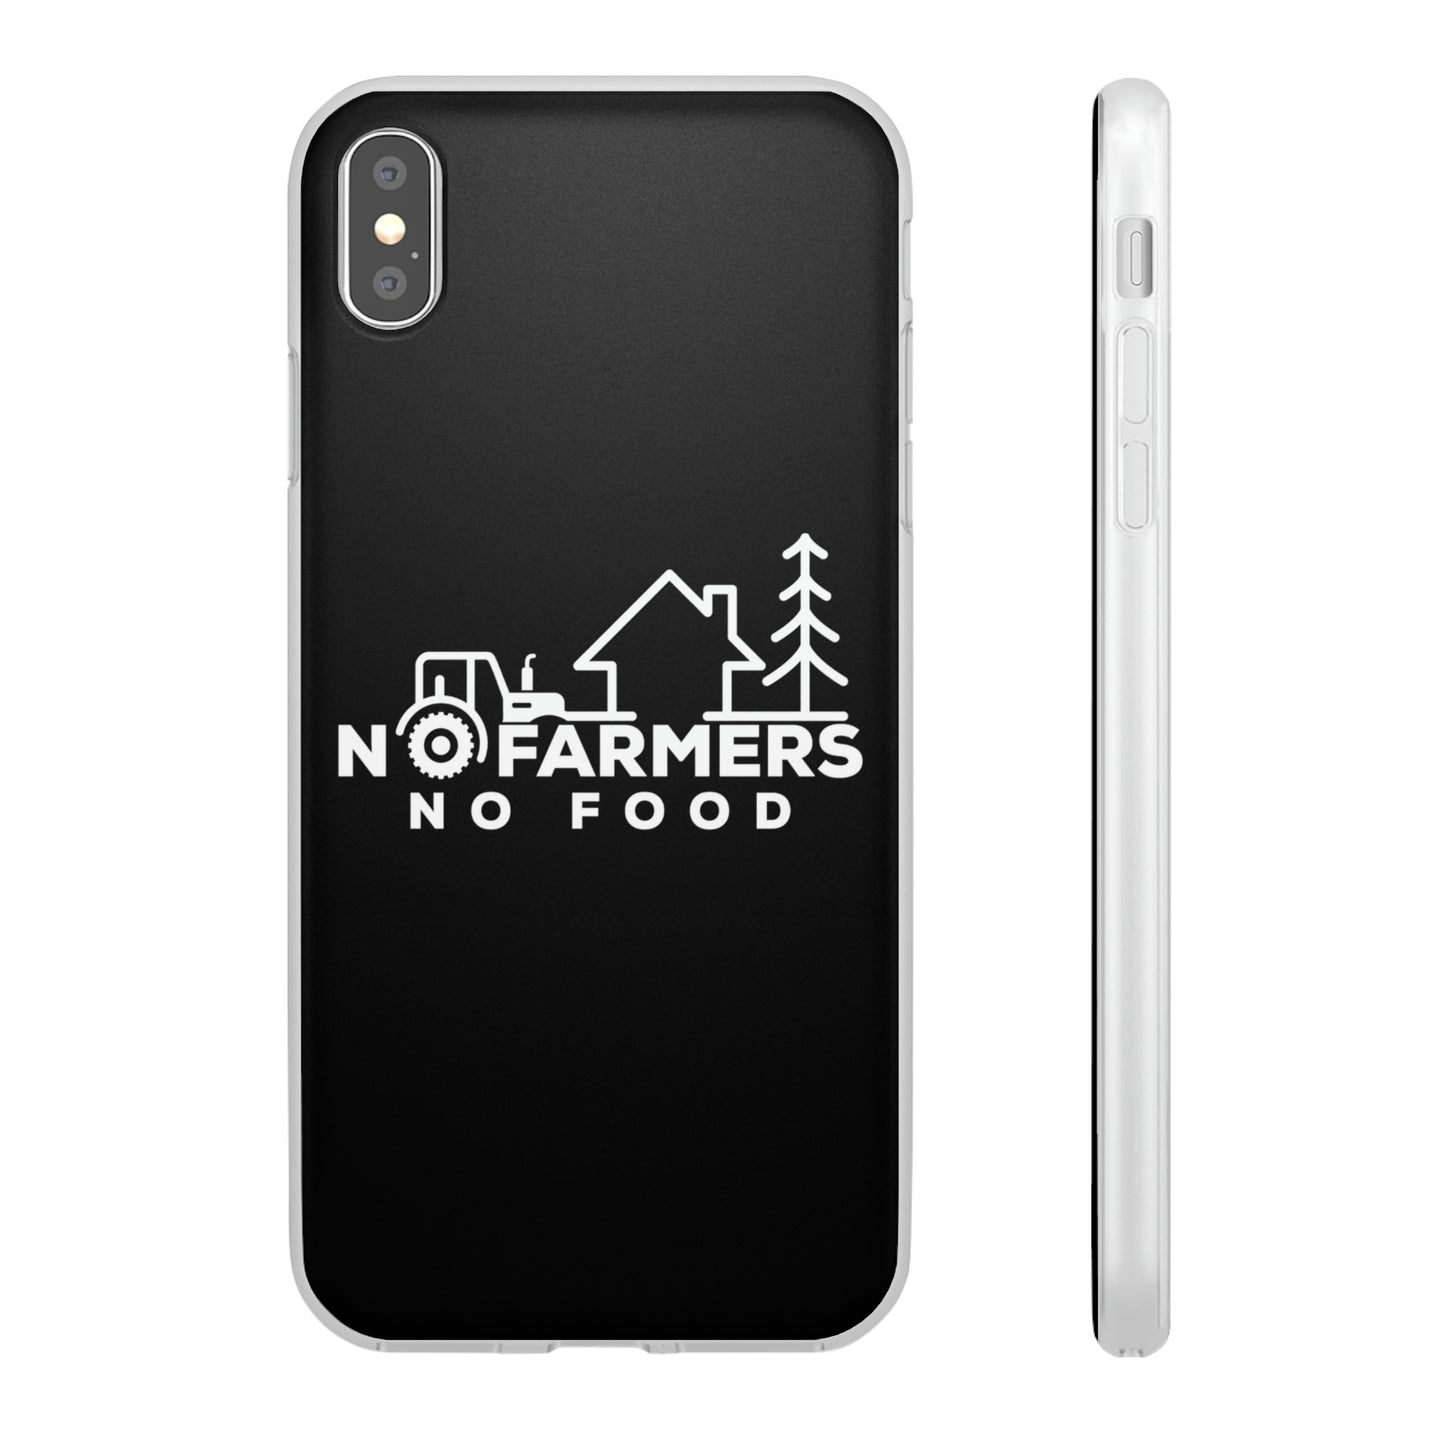 No Farmers No Food - iPhone